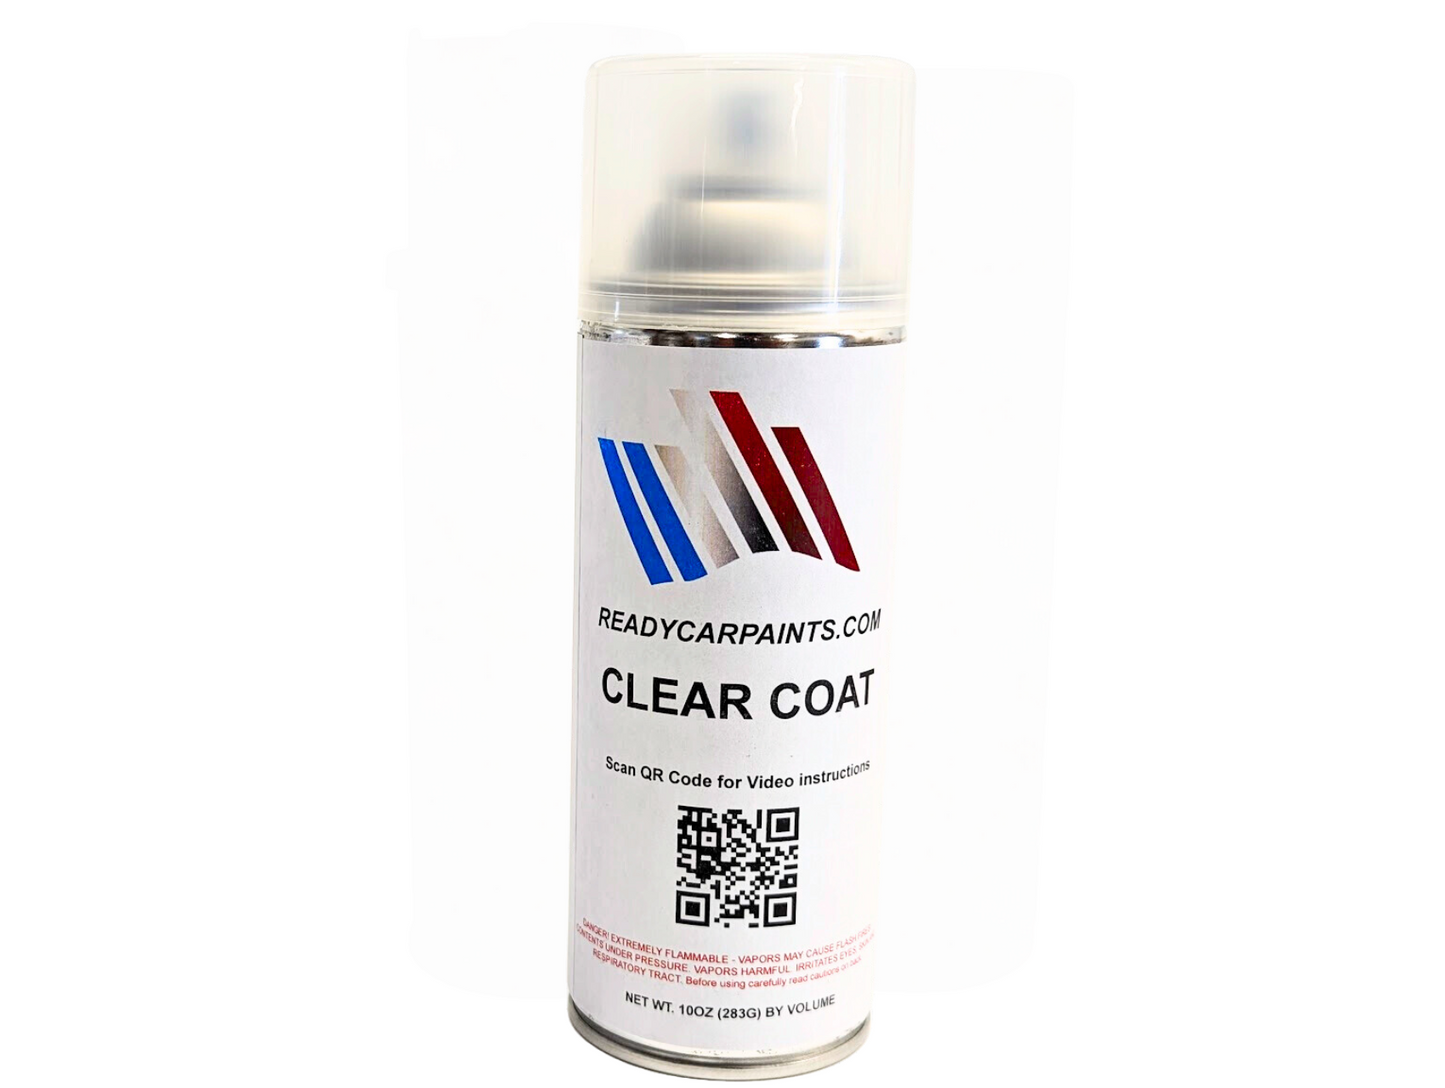 1K Automotive Clear Coat Acrylic Enamel Spray - Protective Gloss Finish